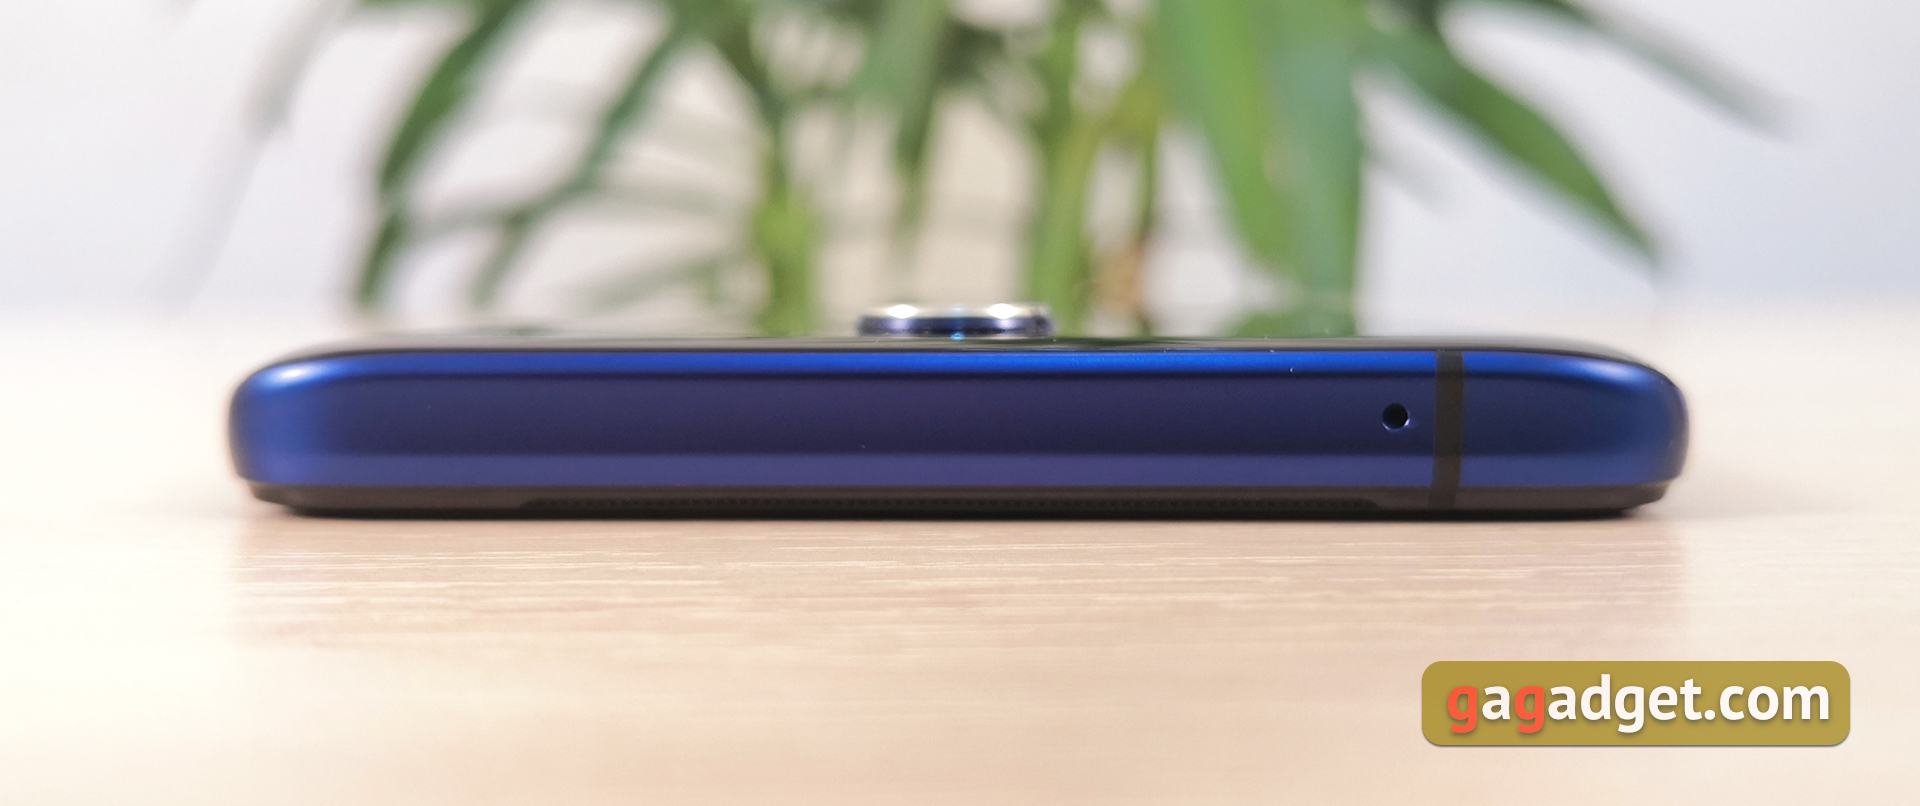 Przegląd Realme X2 Pro: wyświetlacz 90 Hz, Snapdragon 855+ i błyskawiczne naładowanie-14